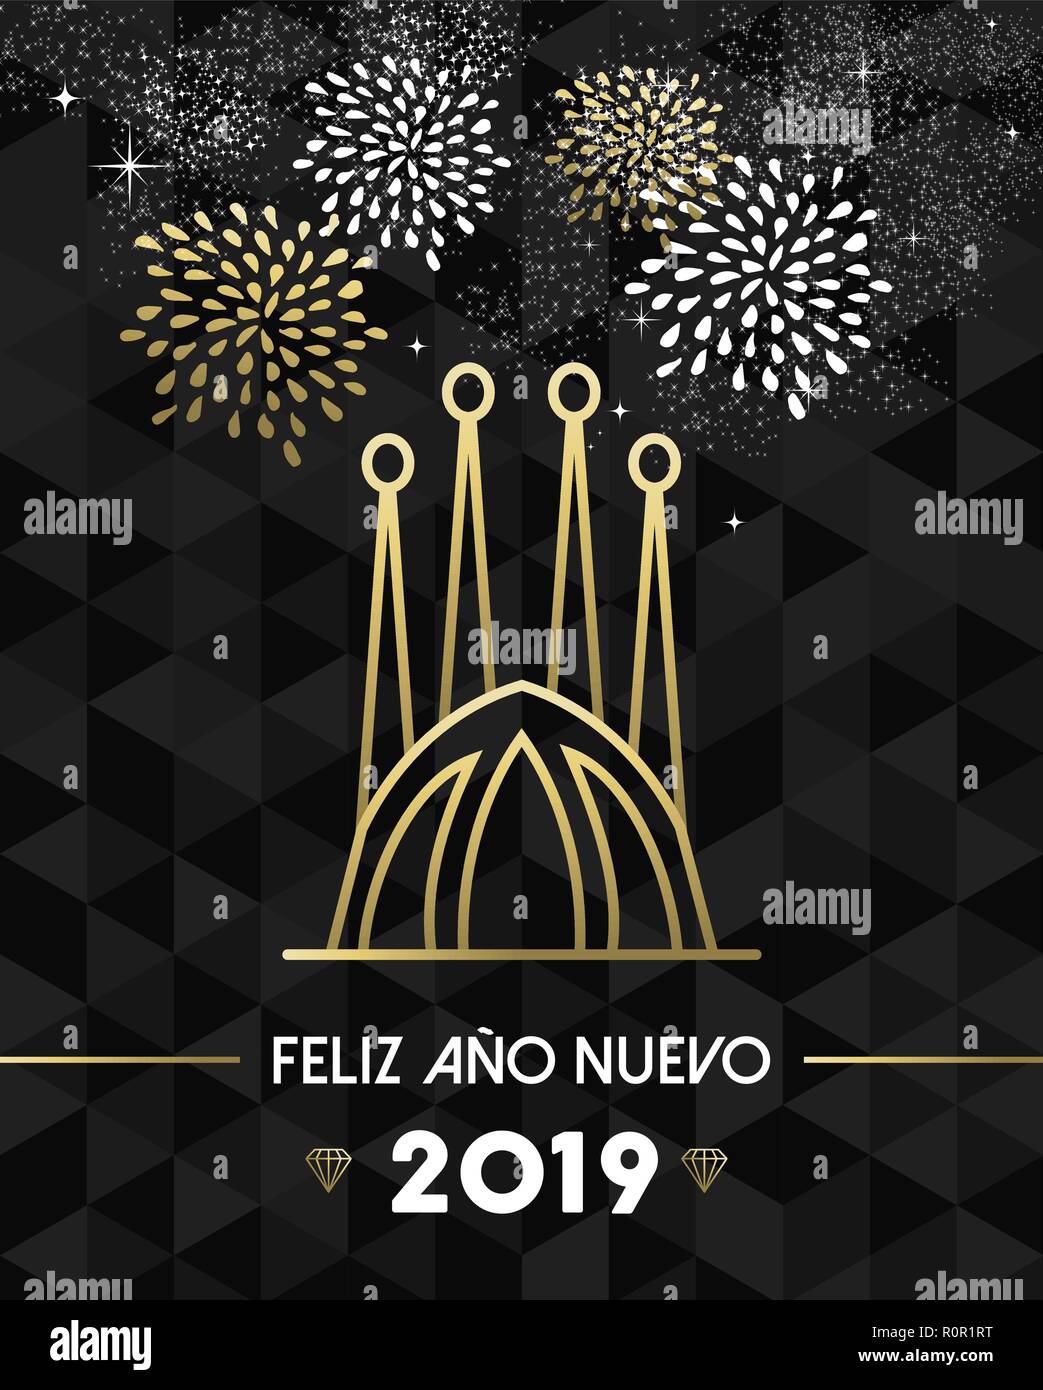 Bonne Année 2019 Carte de souhaits avec Barcelone Espagne Sagrada Familia church style du contour en or. Illustration de Vecteur